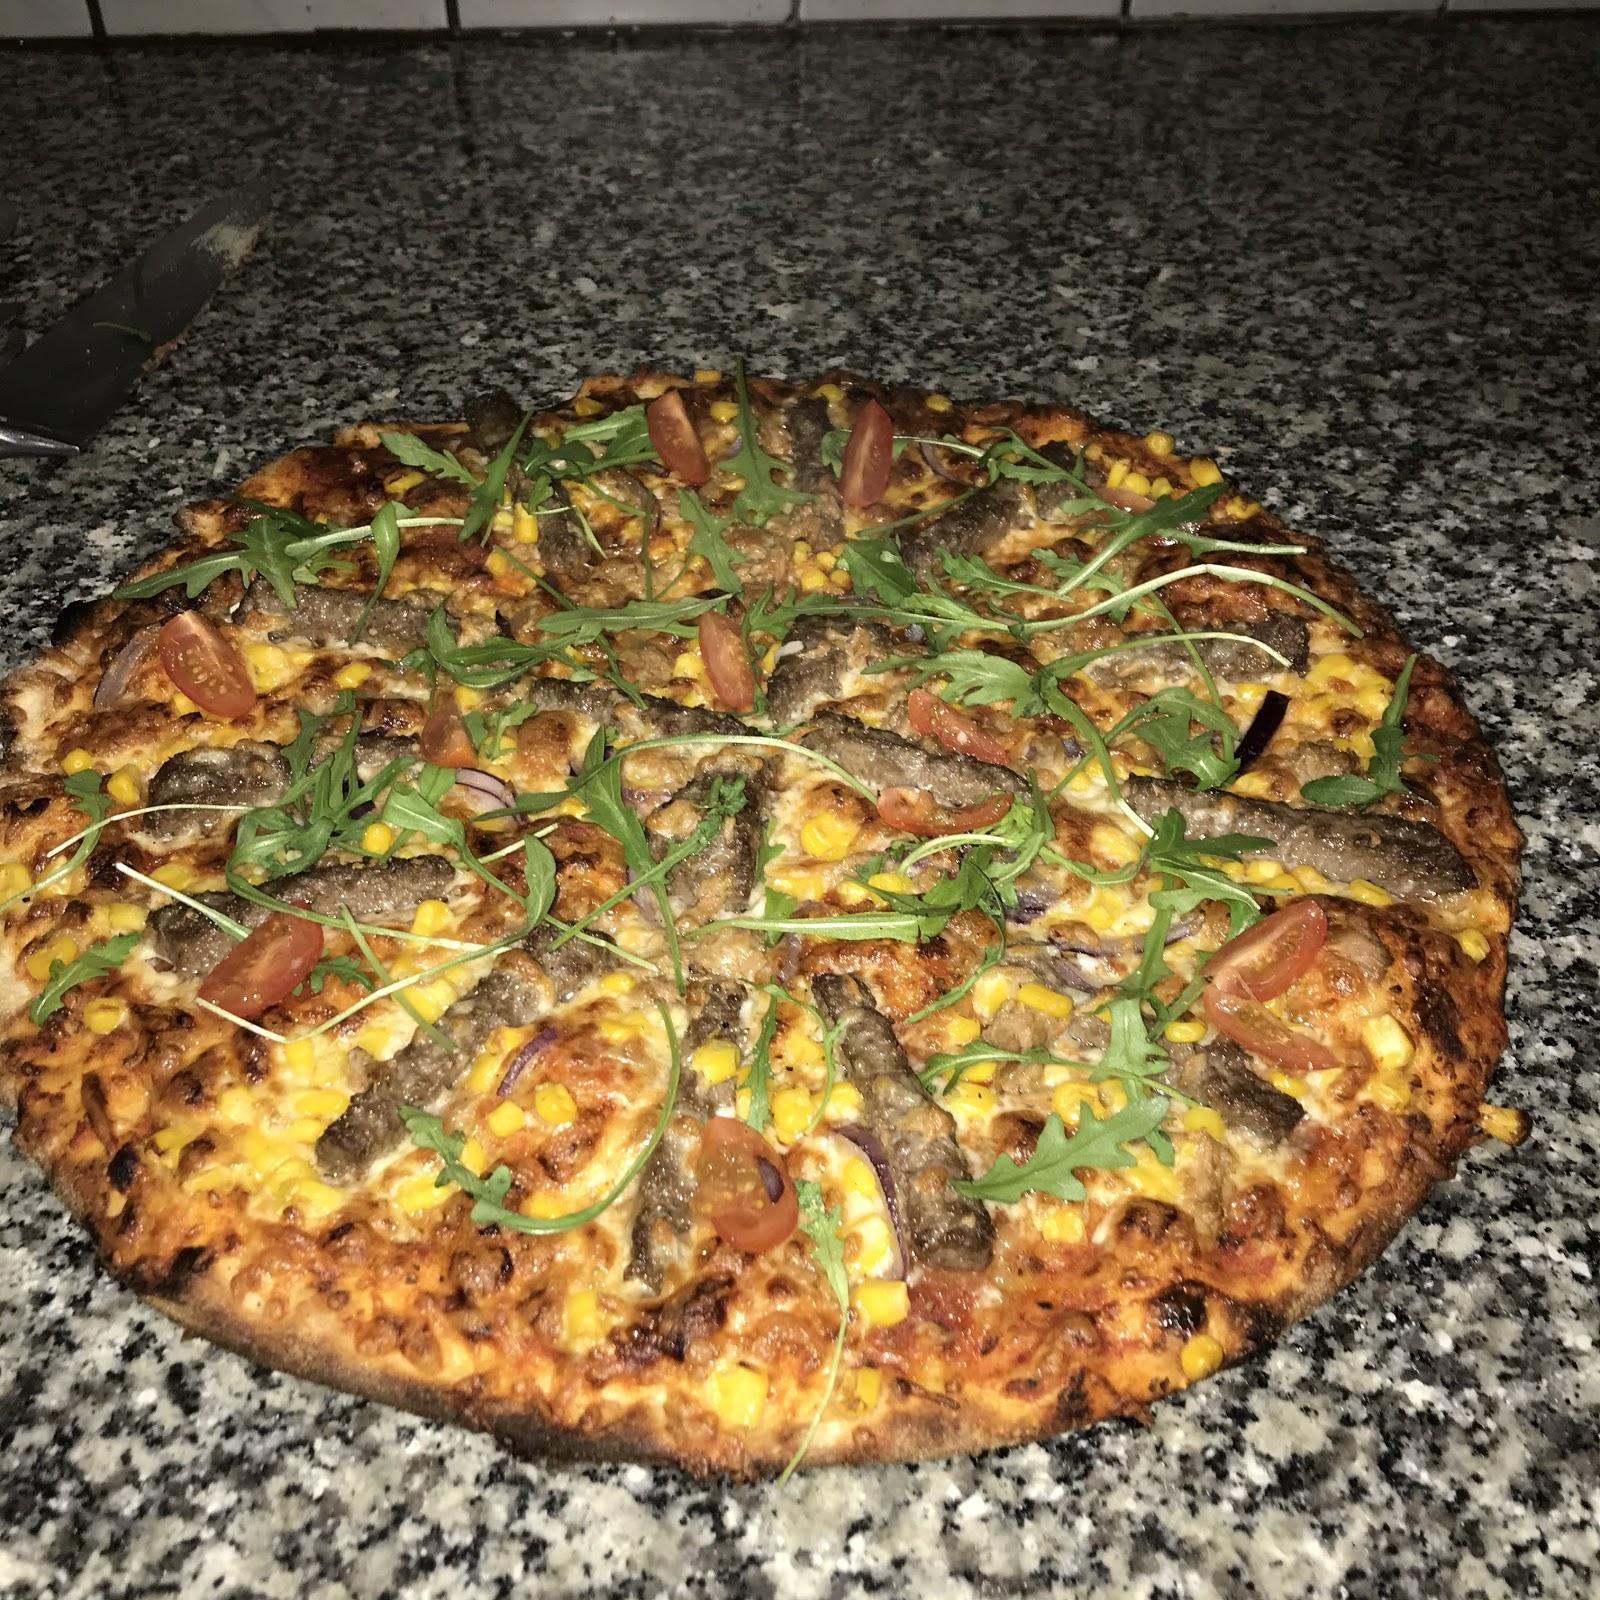 Karachi pizza